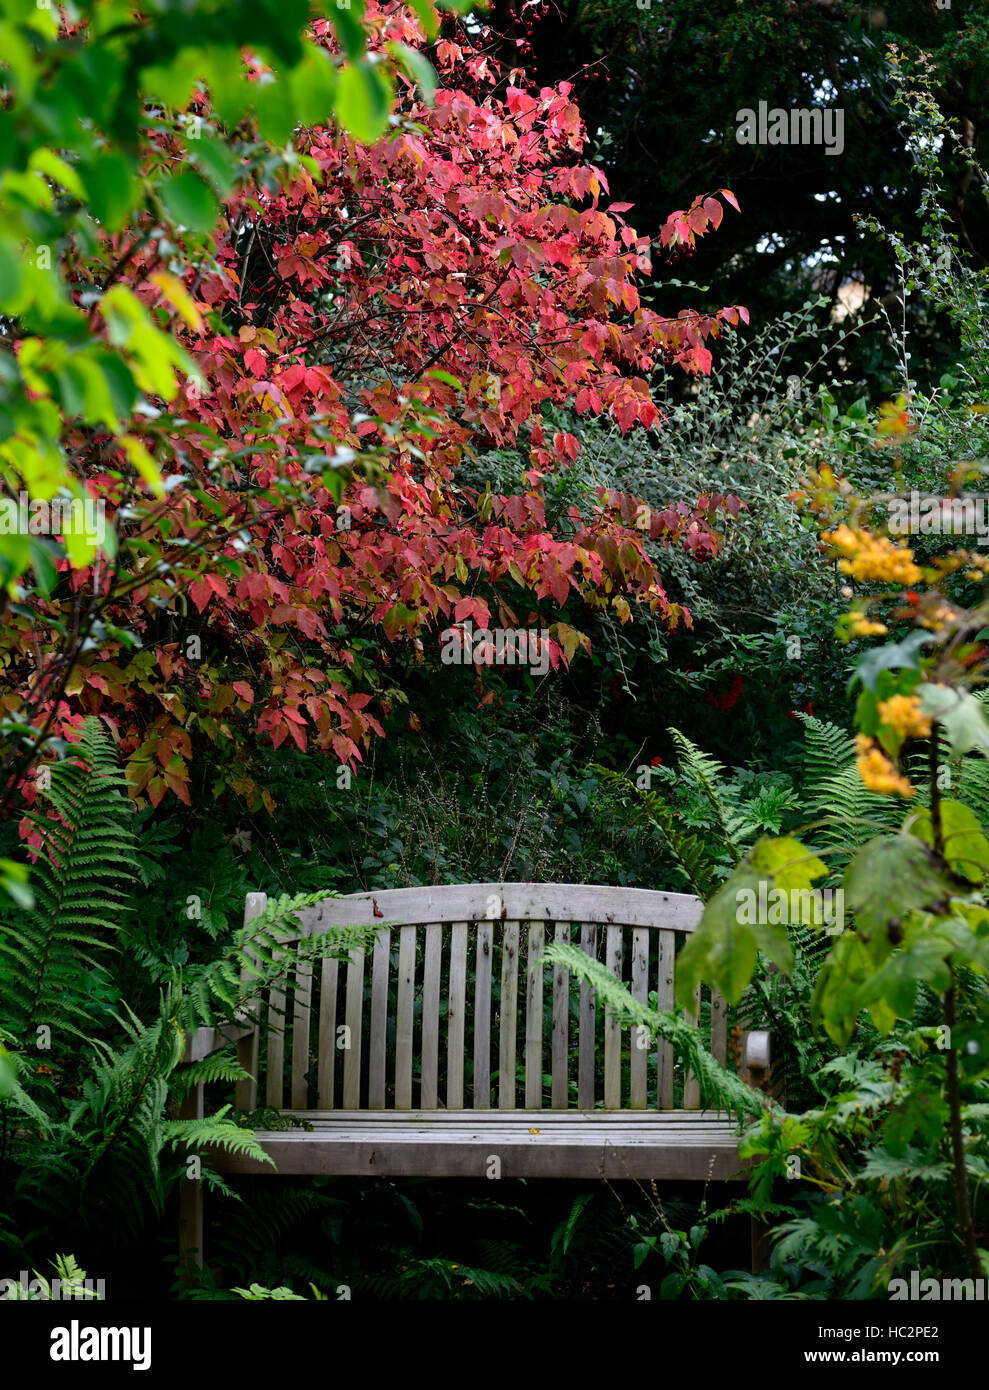 Euonymus Alatus rote Blätter Herbst Sitzbank Sitz ruhigen Ecke Garten Gartenarbeit Einsamkeit Frieden beschauliche Ruhe RM Floral Stockfoto